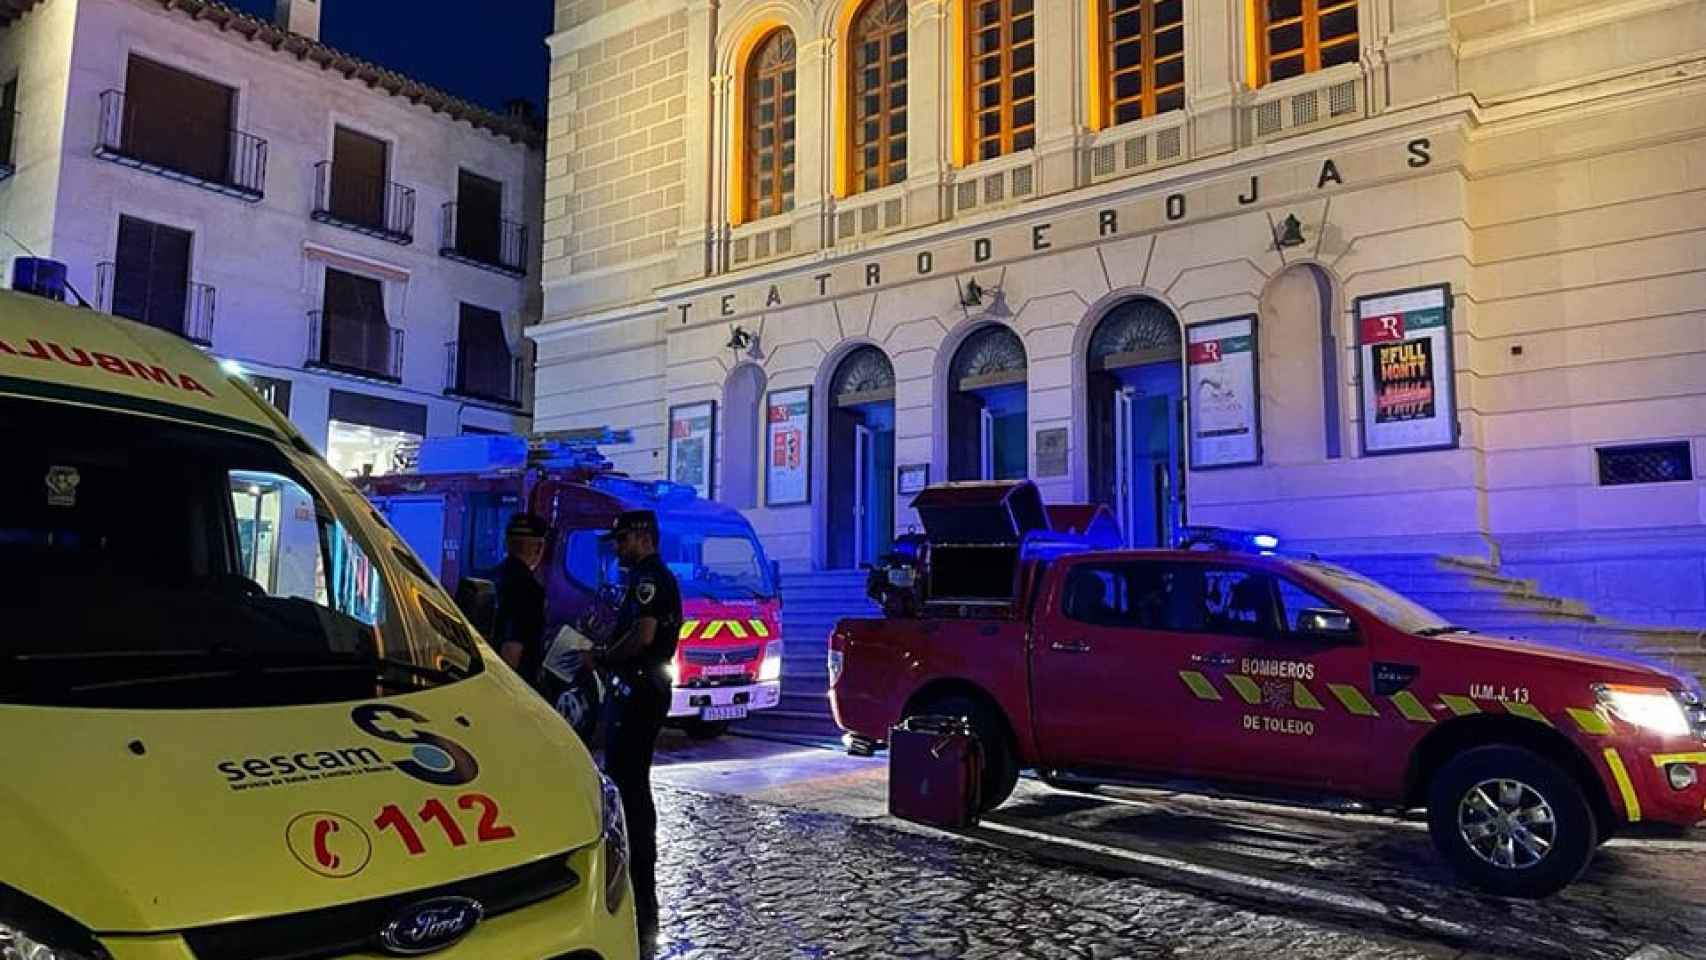 Bomberos, Policía, Protección Civil y medios sanitarios llevan a cabo un simulacro de incendio en el Teatro Municipal de Rojas